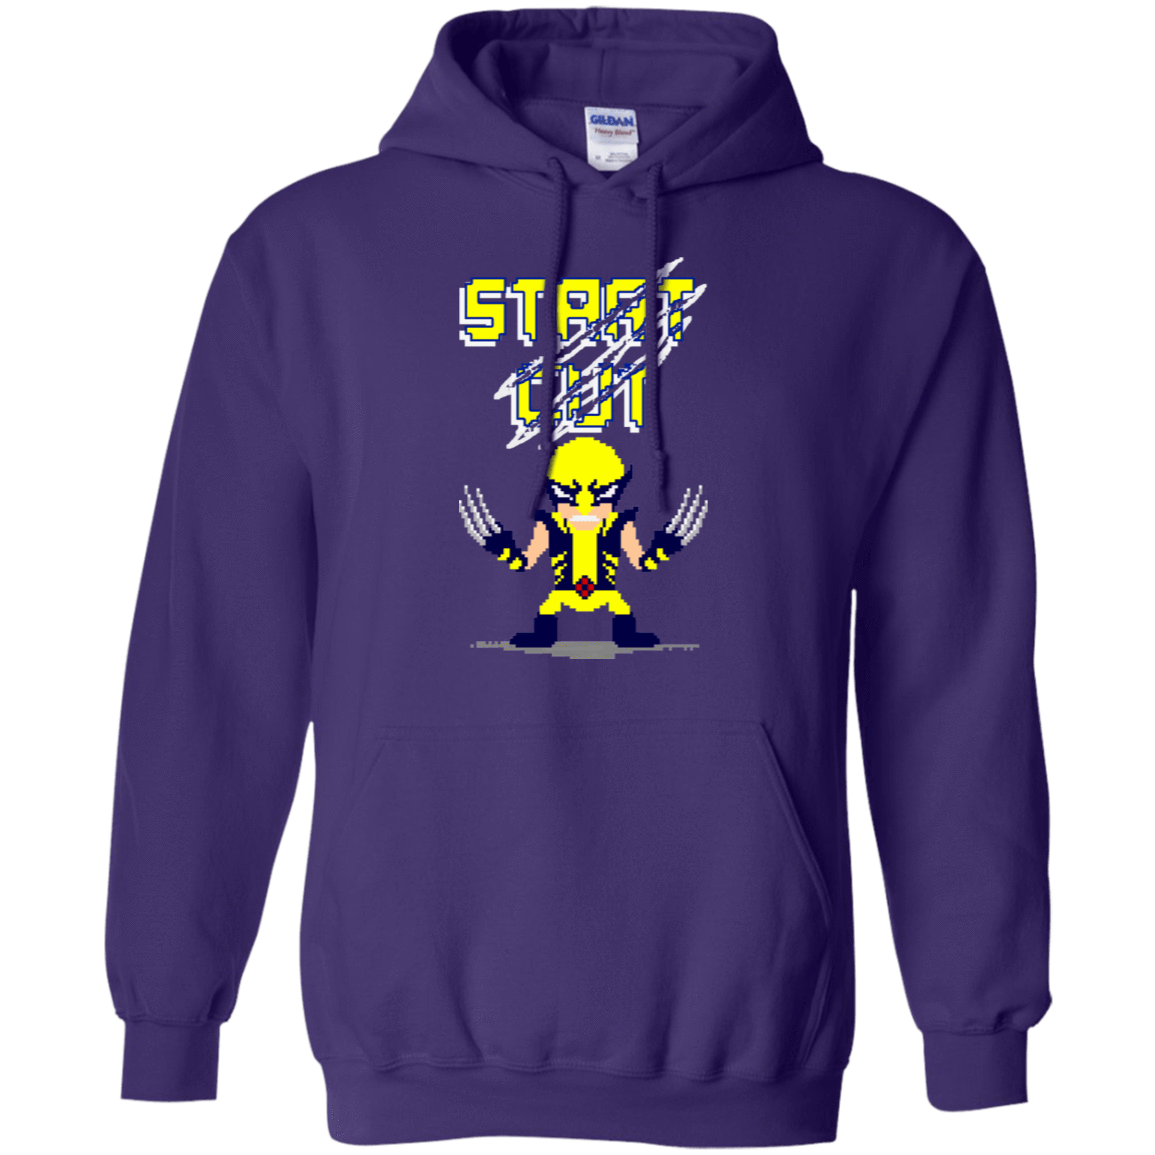 Sweatshirts Purple / S Pixel Wolf Pullover Hoodie